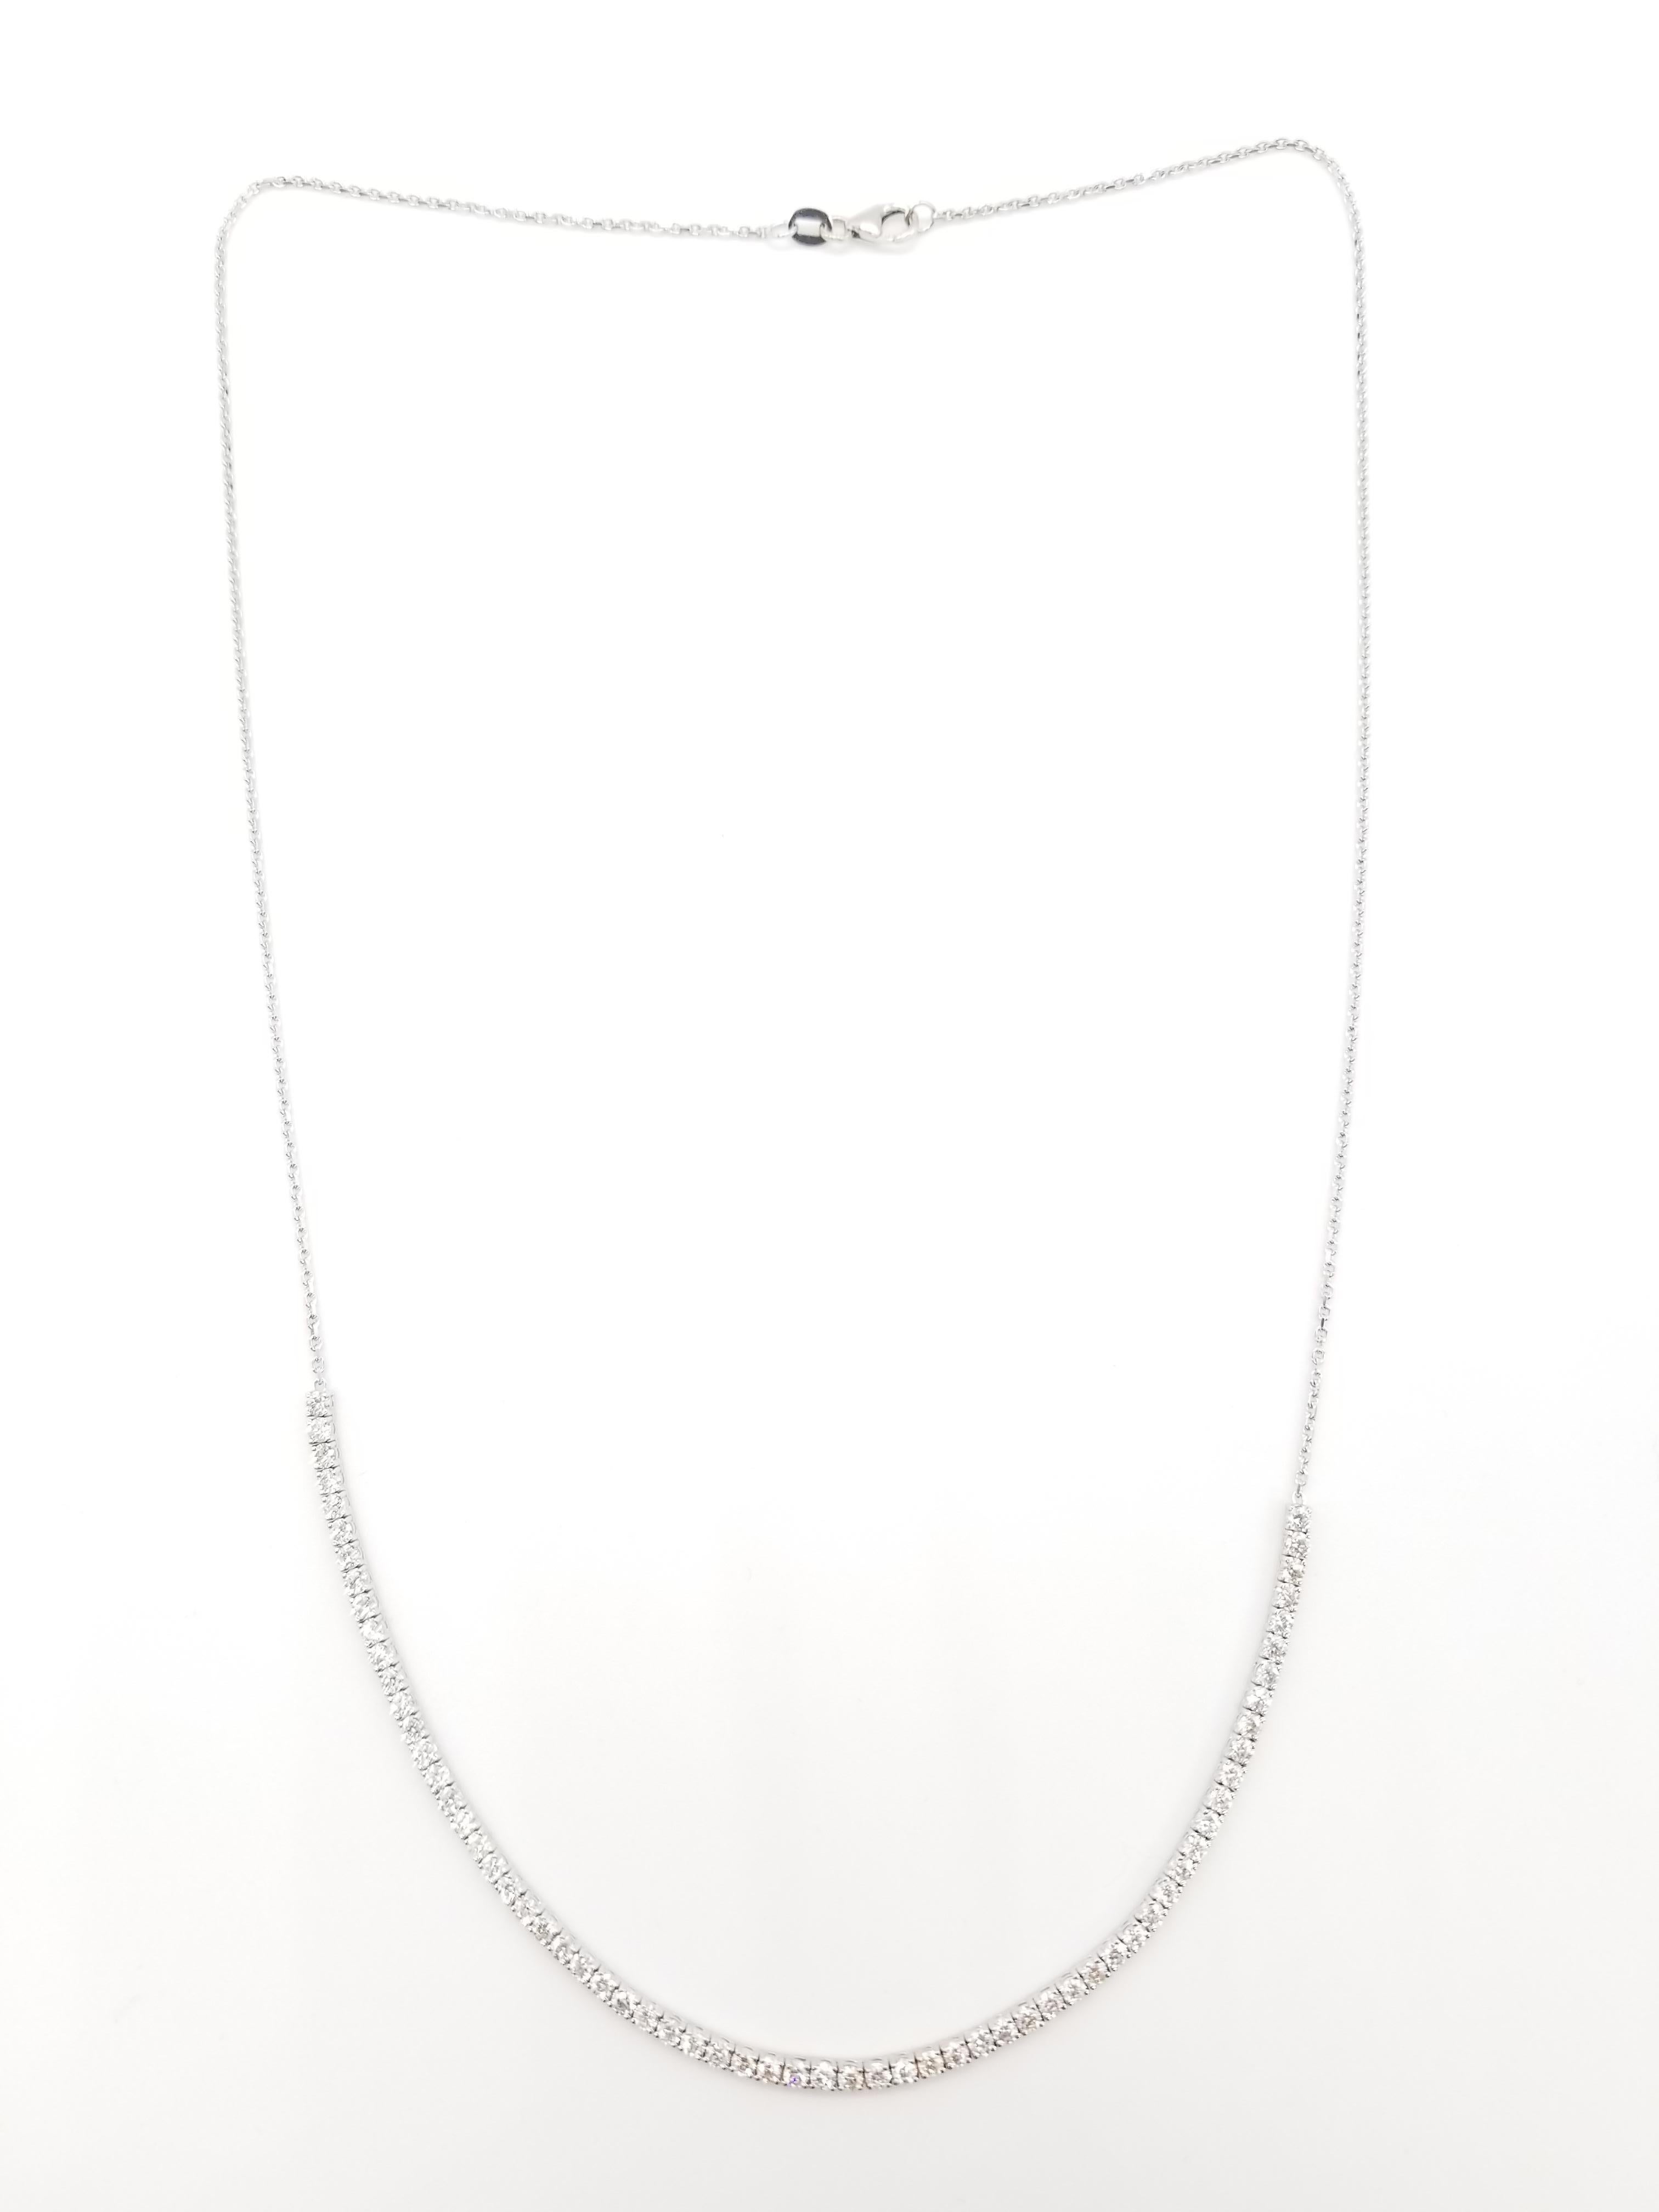 Taille ronde 4.08 Ctw Mini Diamant Tennis Necklace 14 Karat White Gold 22'' (collier de tennis) en vente